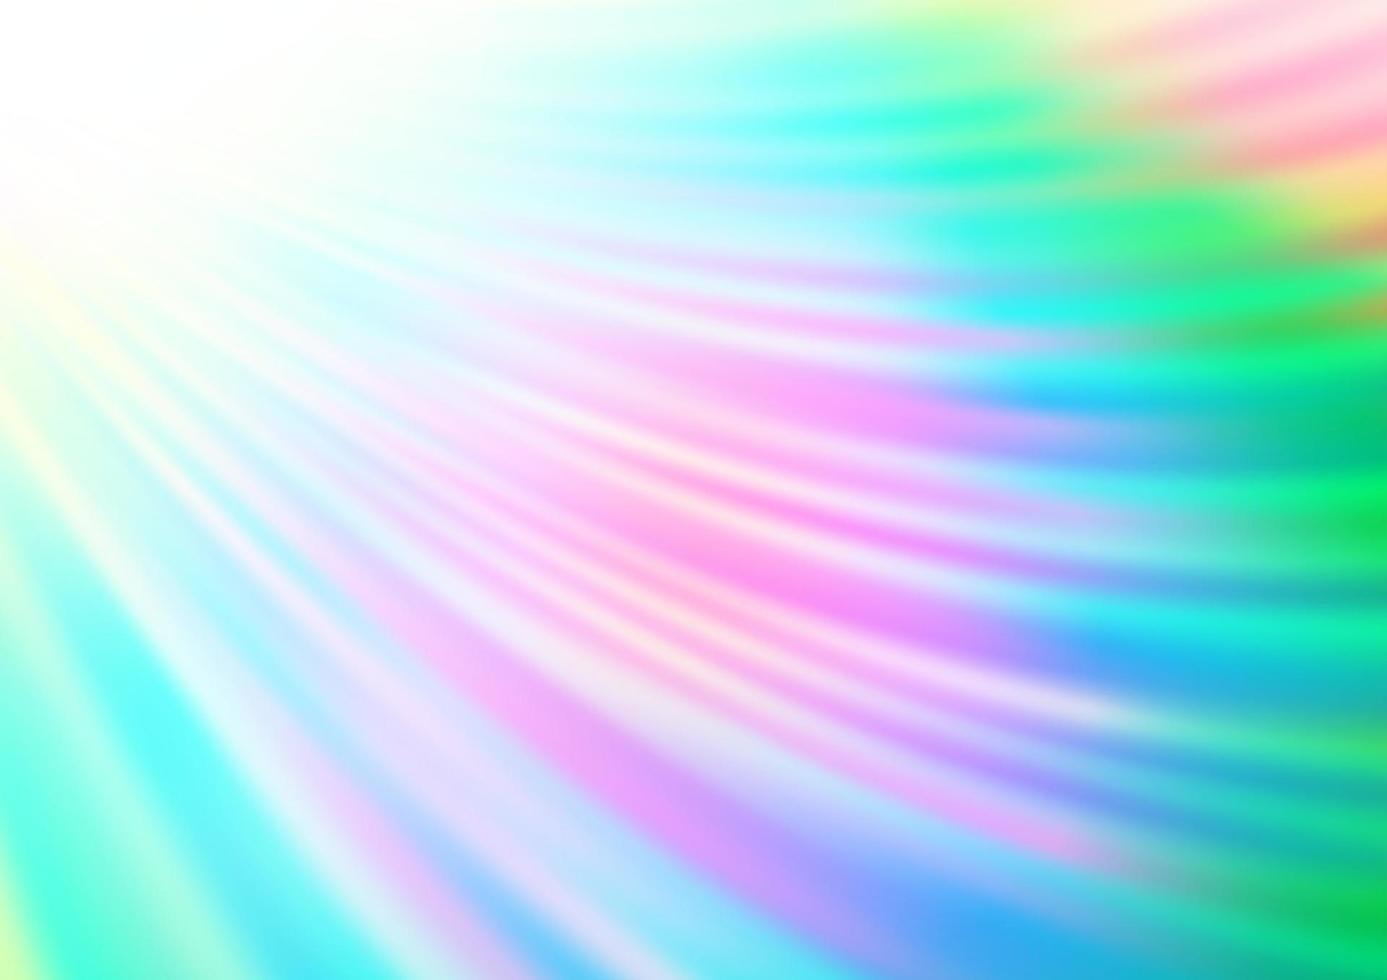 luce multicolore, motivo vettoriale arcobaleno con nastri piegati.